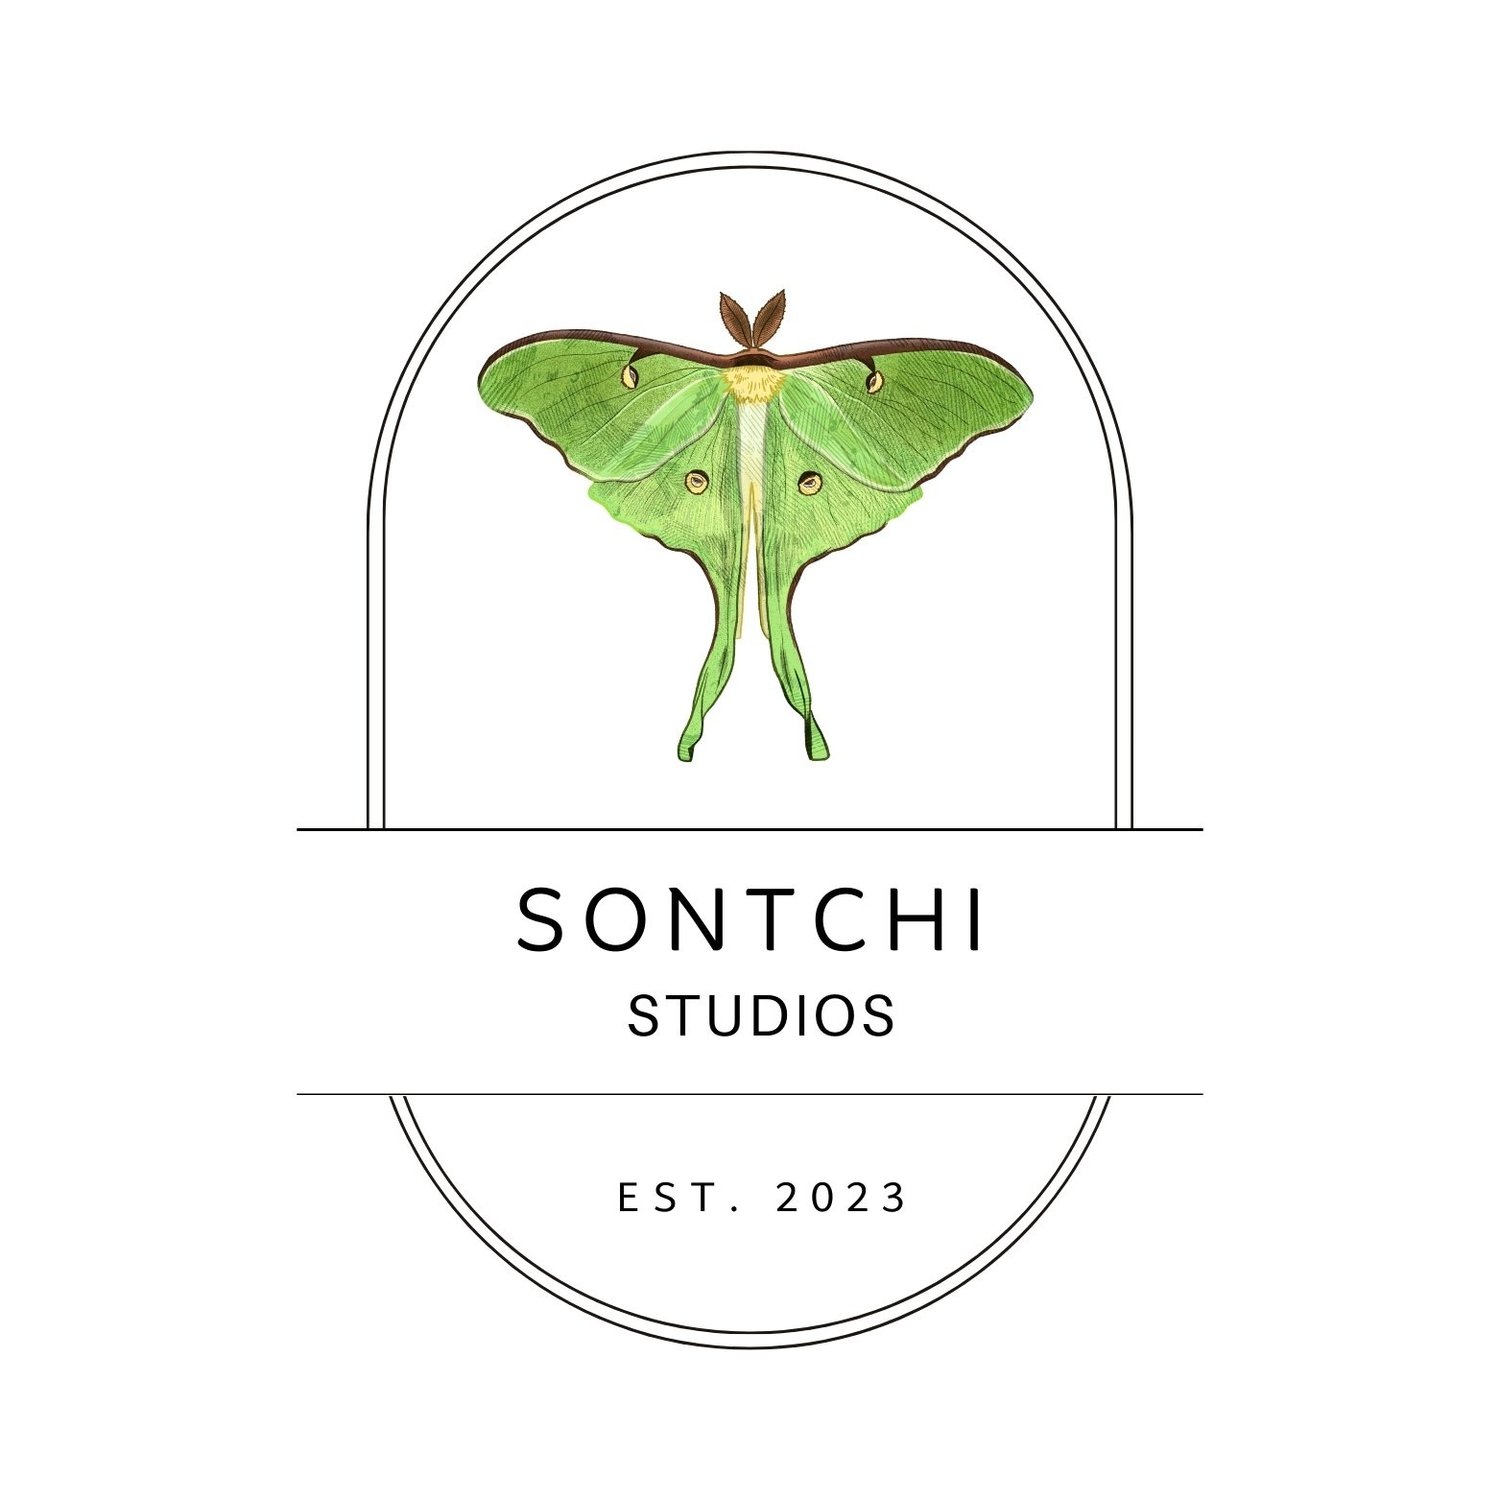 Sontchi Studios